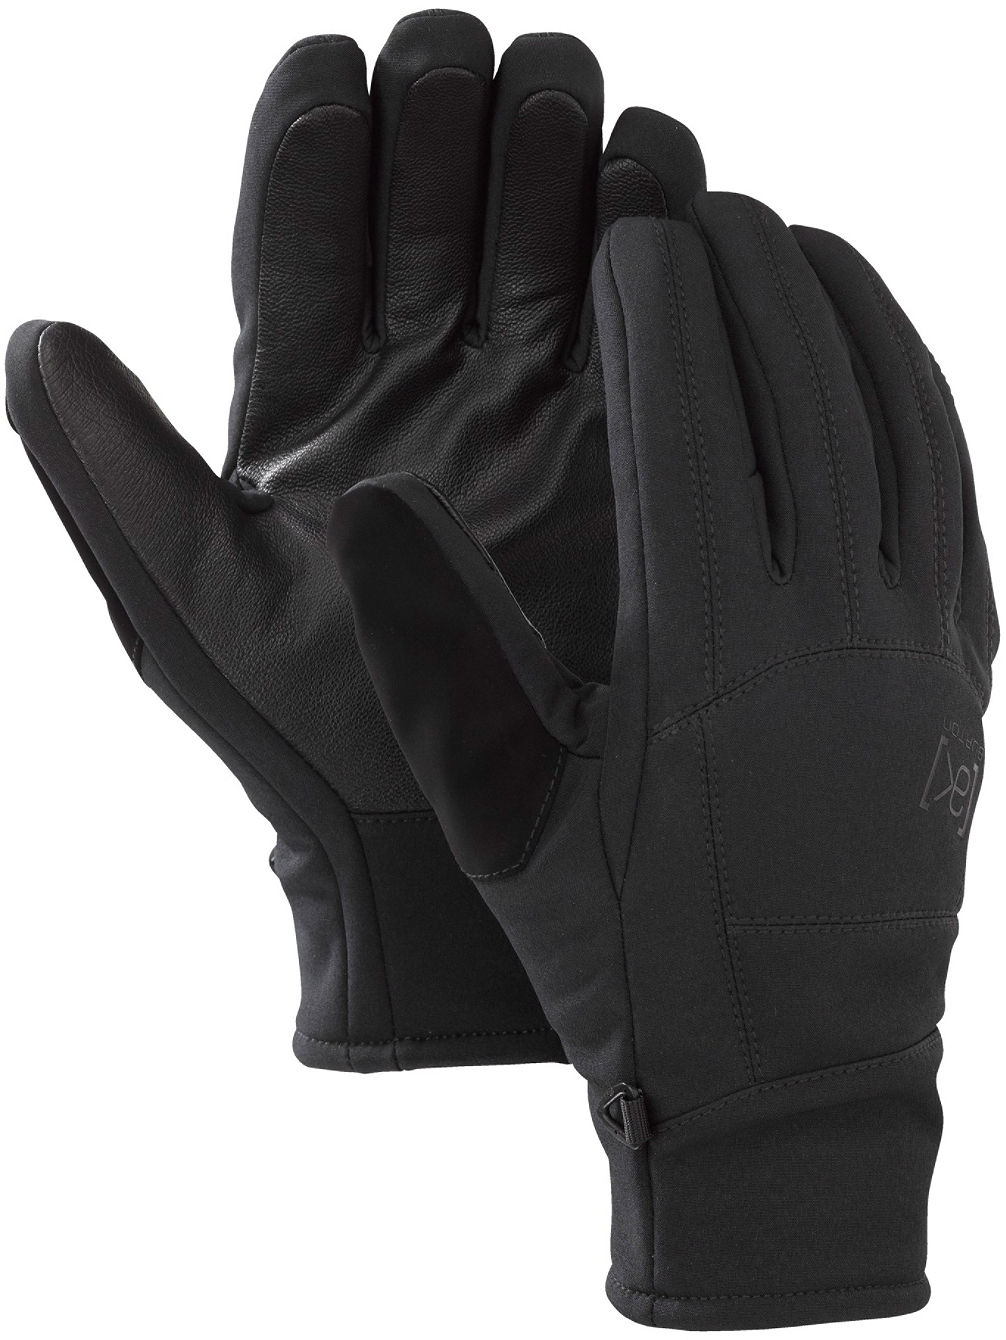 Ak Tech Gloves